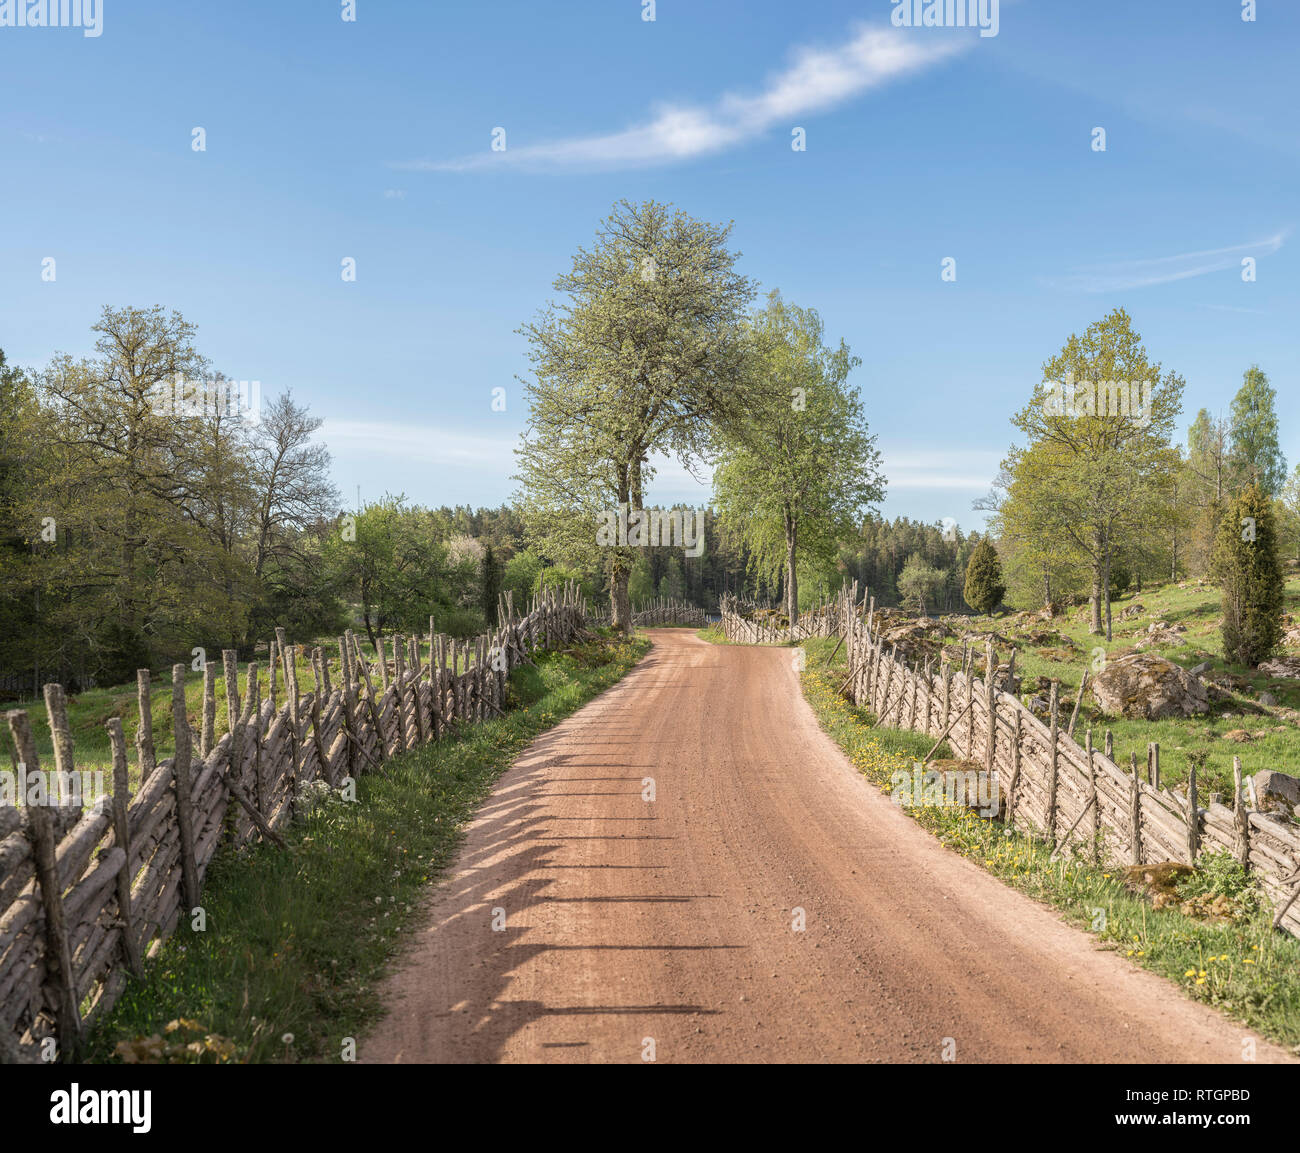 Il pittoresco paese strada che conduce a un lago attraverso un bellissimo paesaggio rurale con roundpole recinzioni, Smaland, Svezia e Scandinavia. Foto Stock